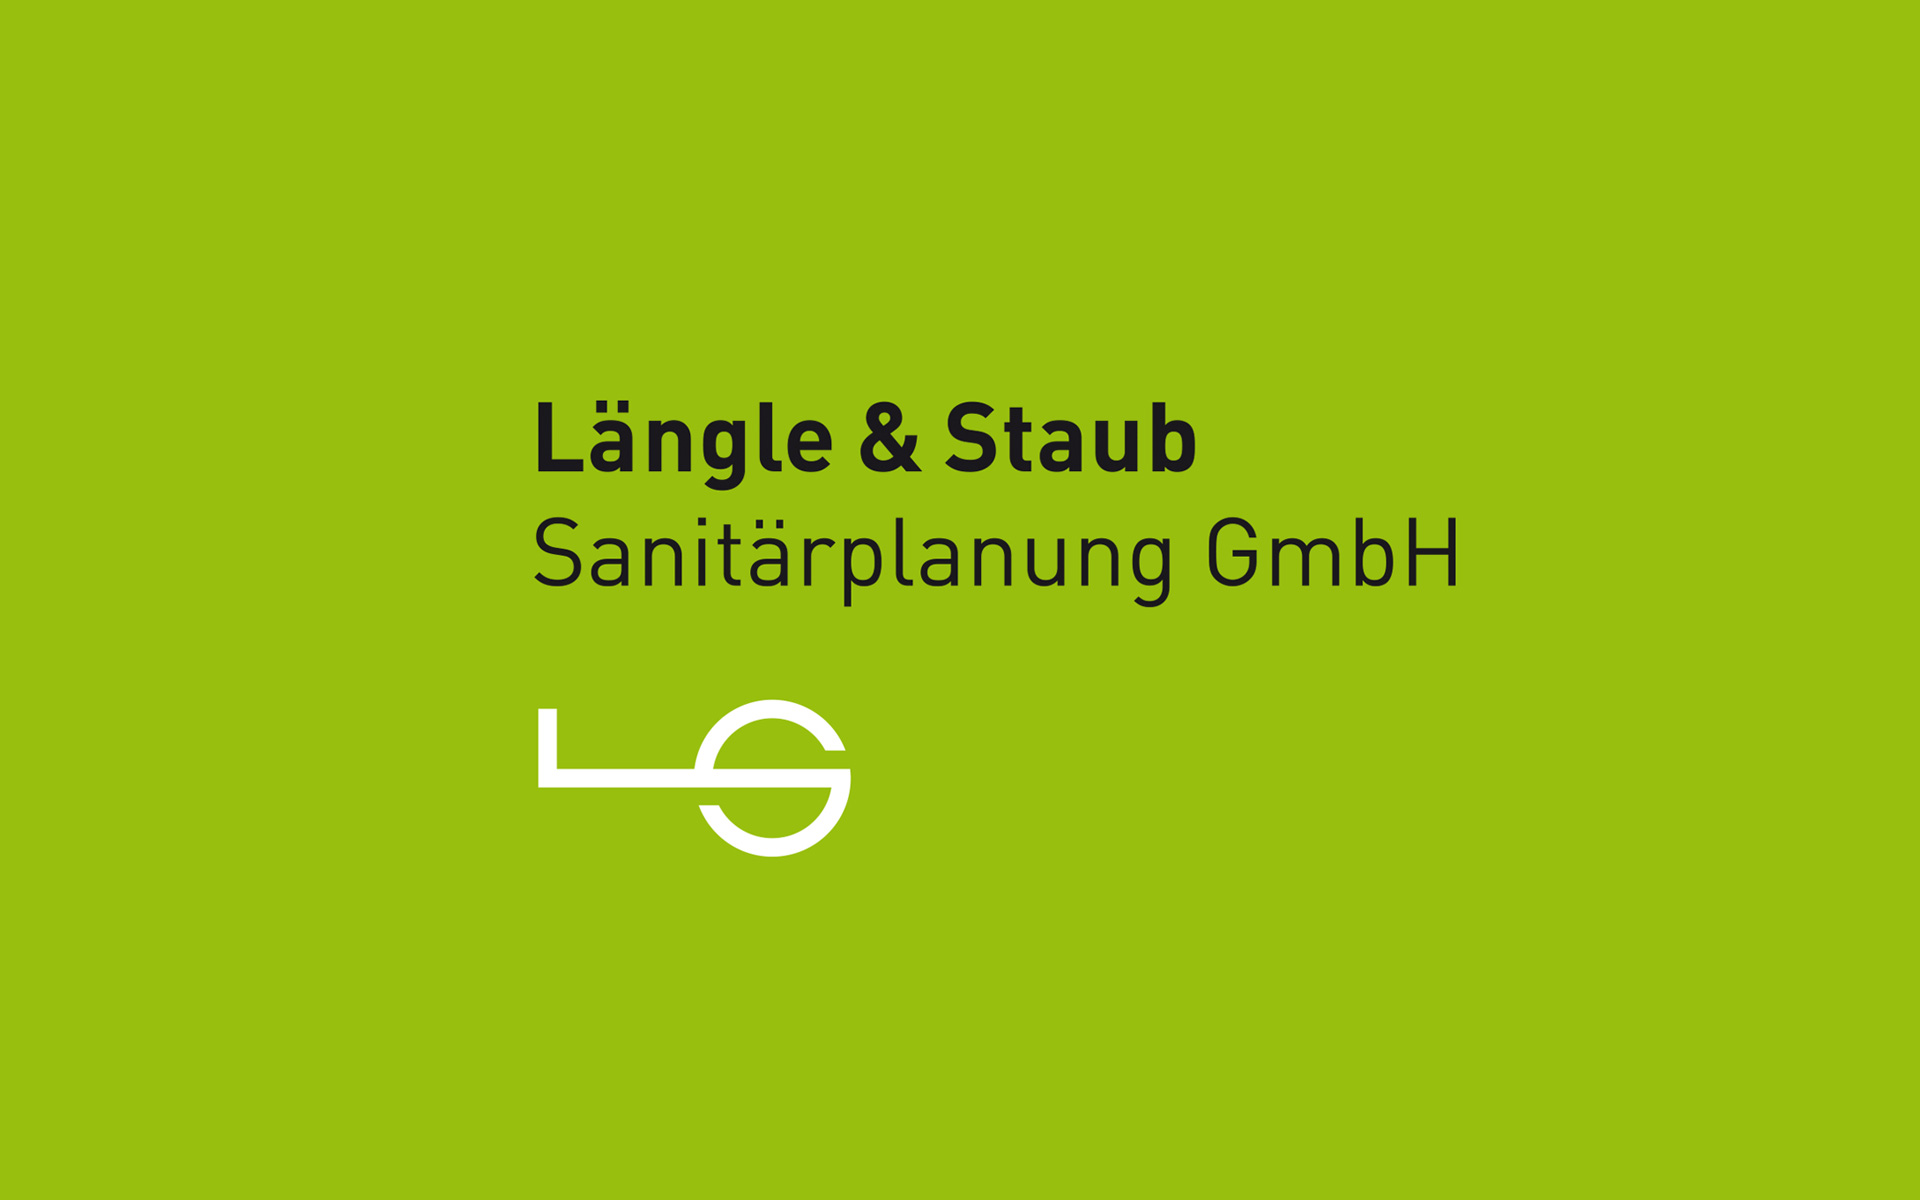 Logo und Erscheinungsbild für Längle & Staub von EightyNine, Agentur für Corporate Design und Grafik in St. Gallen, Schweiz